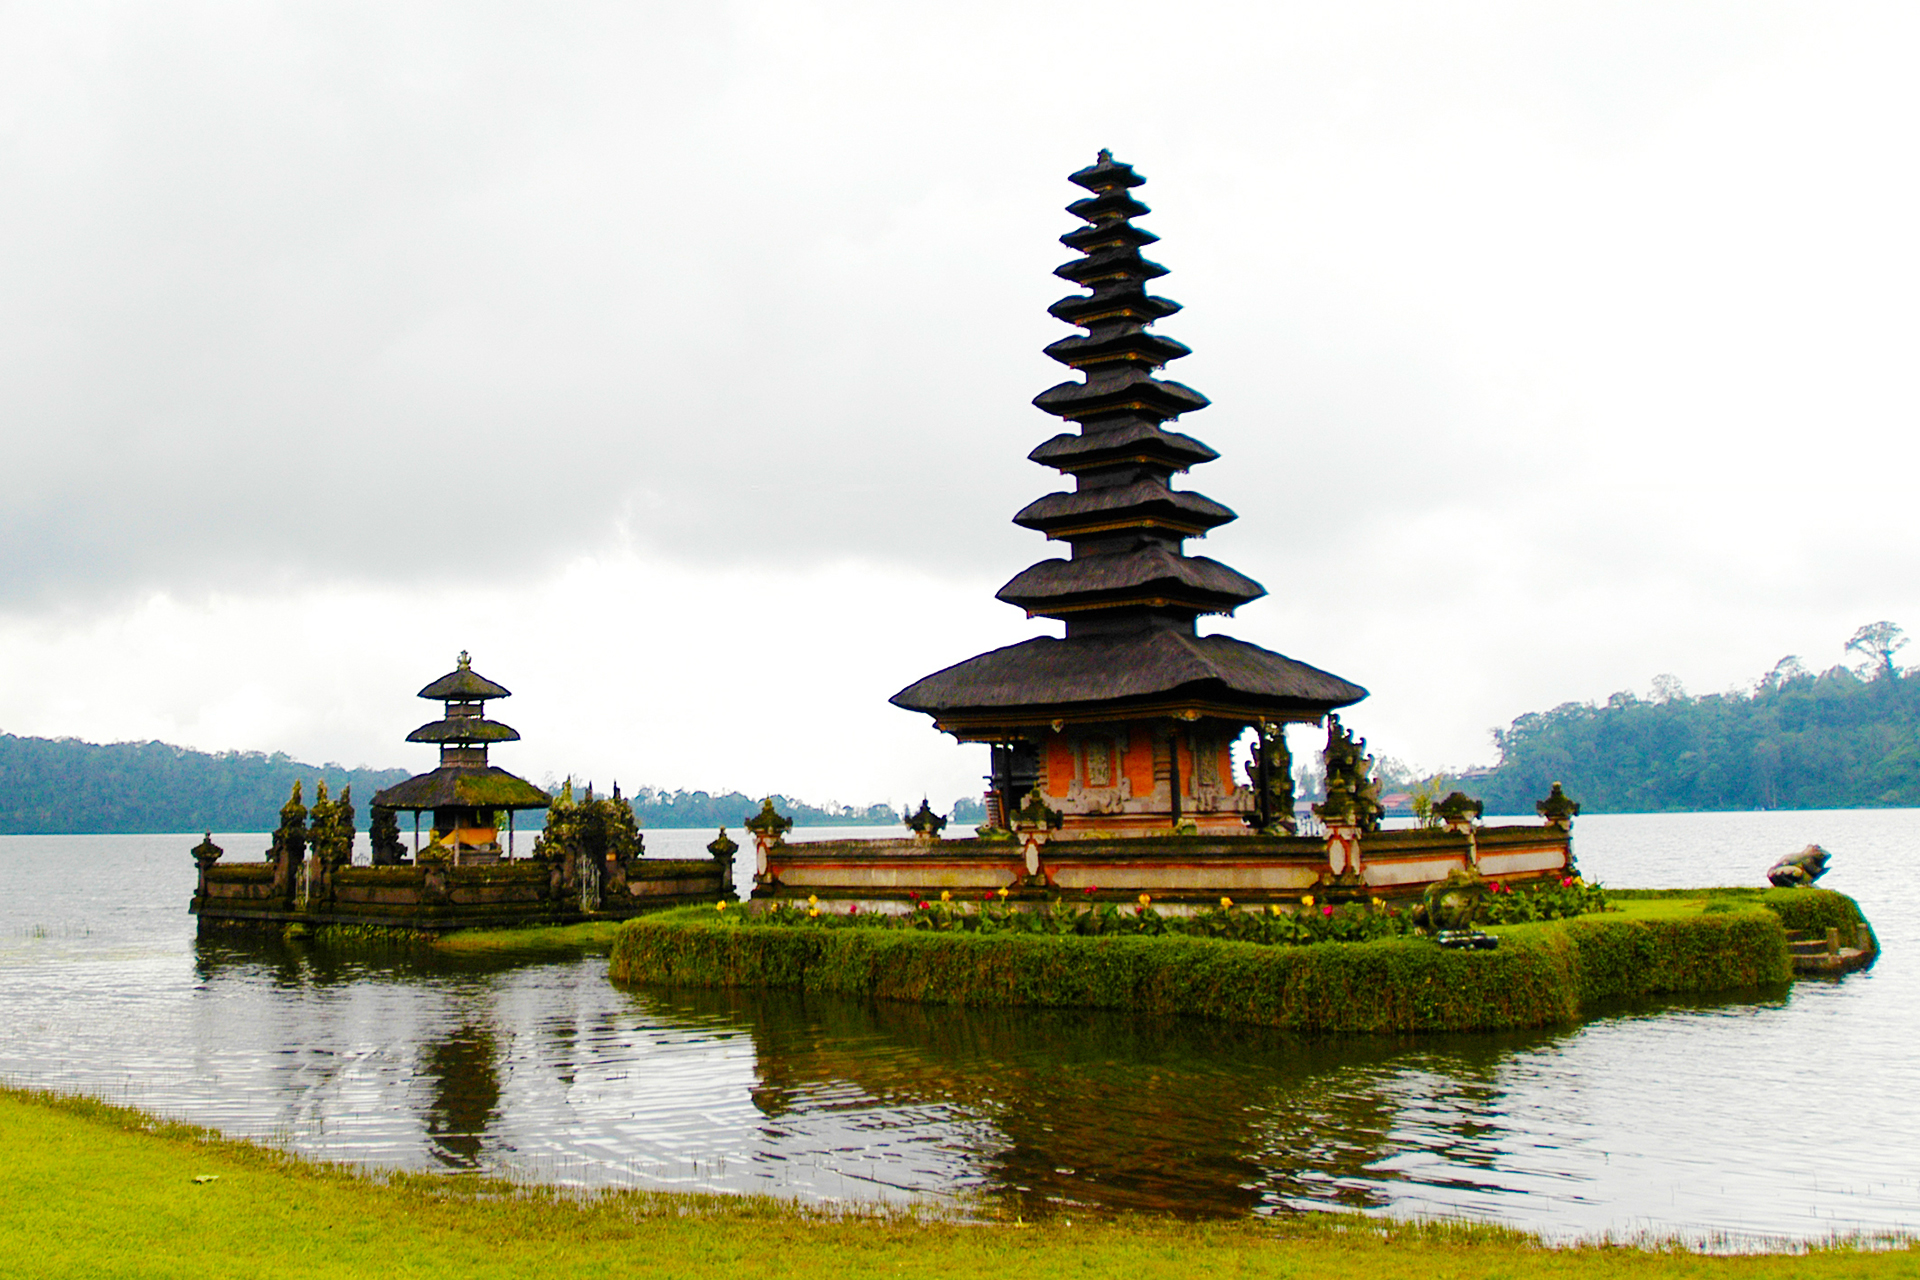 Bali-viaggio-dgvtravel.jpg